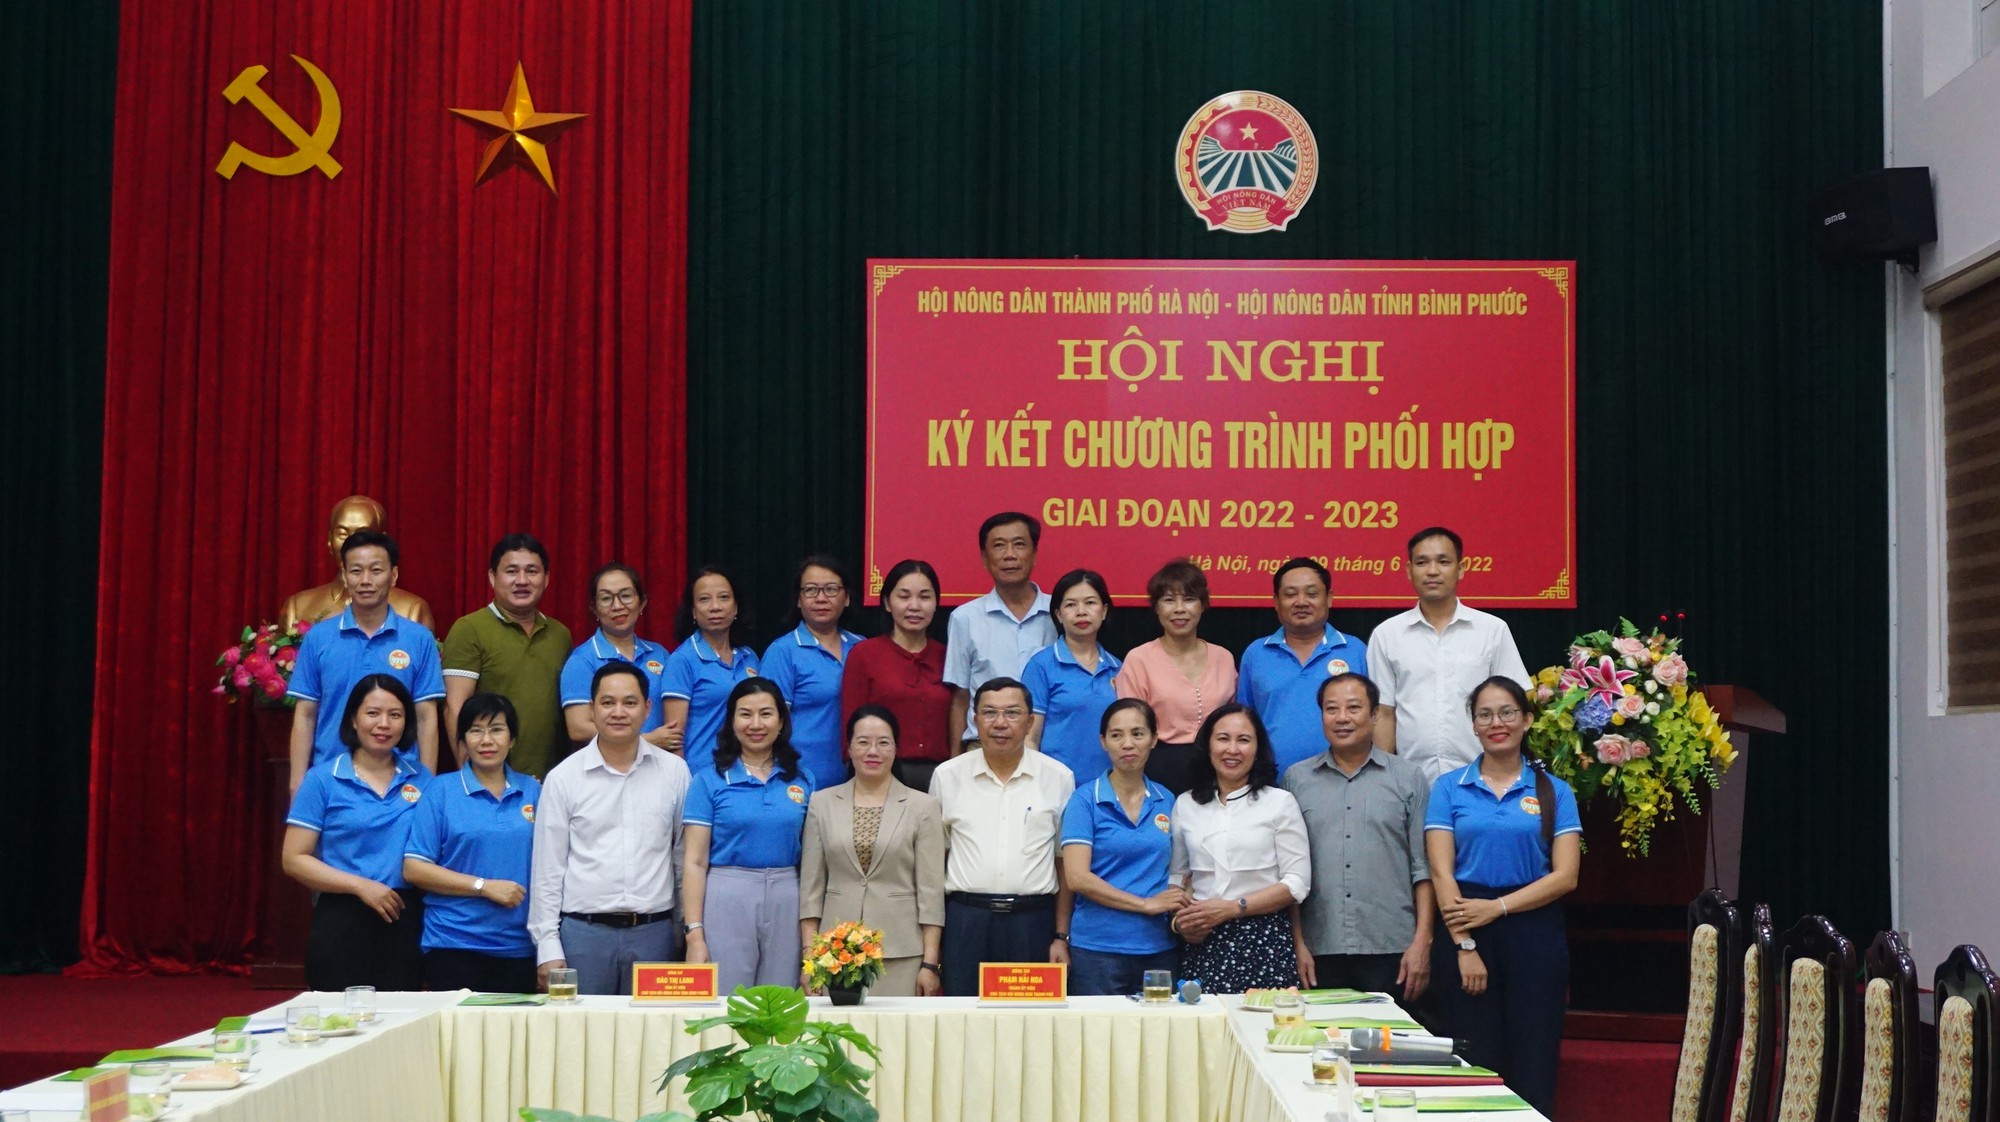 Hội Nông dân TP Hà Nội và Hội Nông dân tỉnh Bình Phước ký kết hợp tác - Ảnh 6.